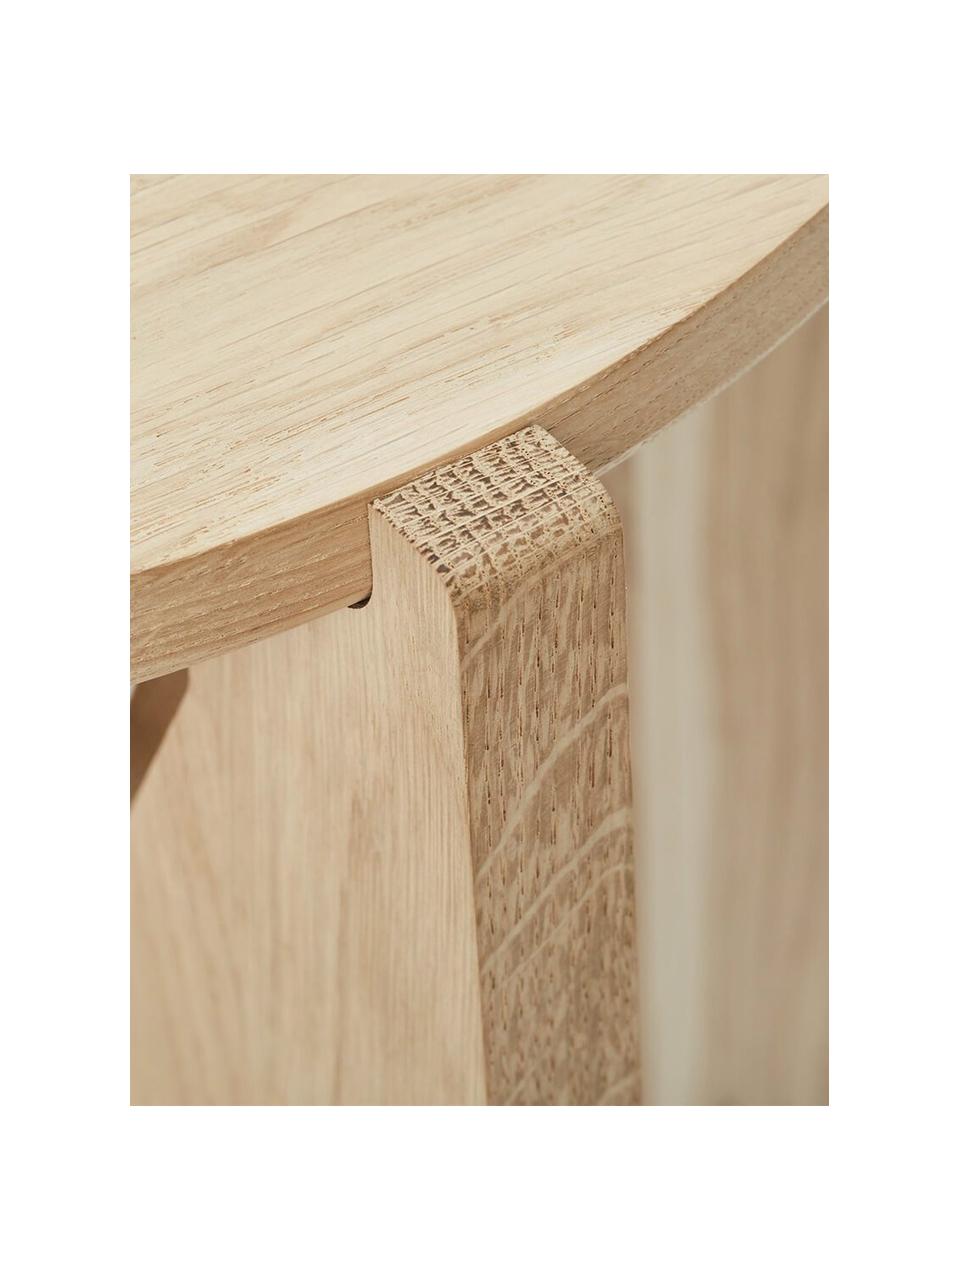 Runder Couchtisch Future aus Eichenholz, Massives Eichenholz

Dieses Produkt wird aus nachhaltig gewonnenem, FSC®-zertifiziertem Holz gefertigt., Eichenholz, Ø 52 cm